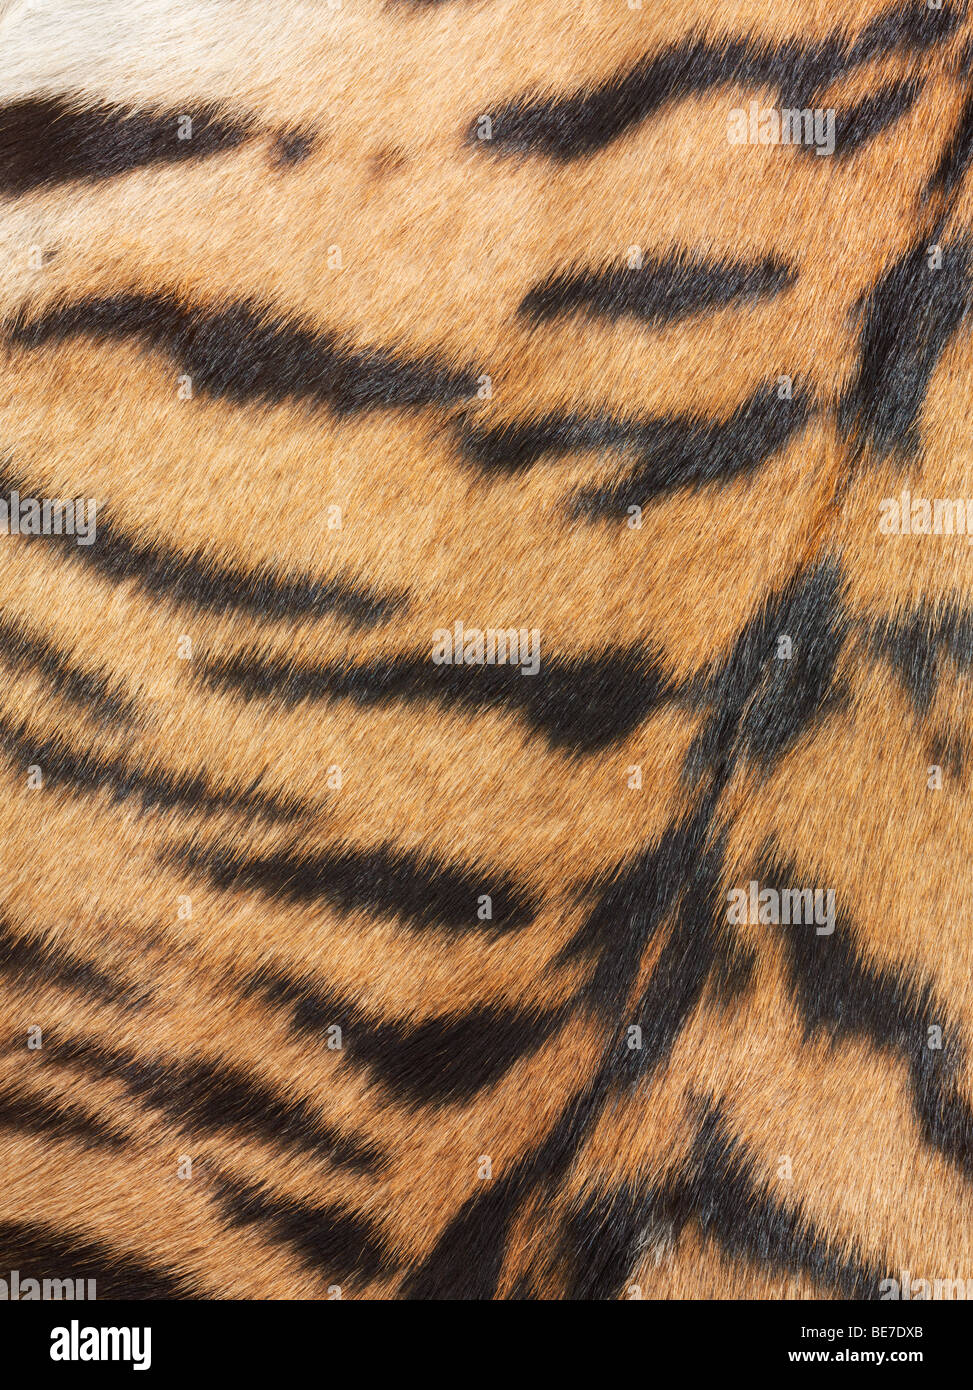 Tiger fur, detail Stock Photo